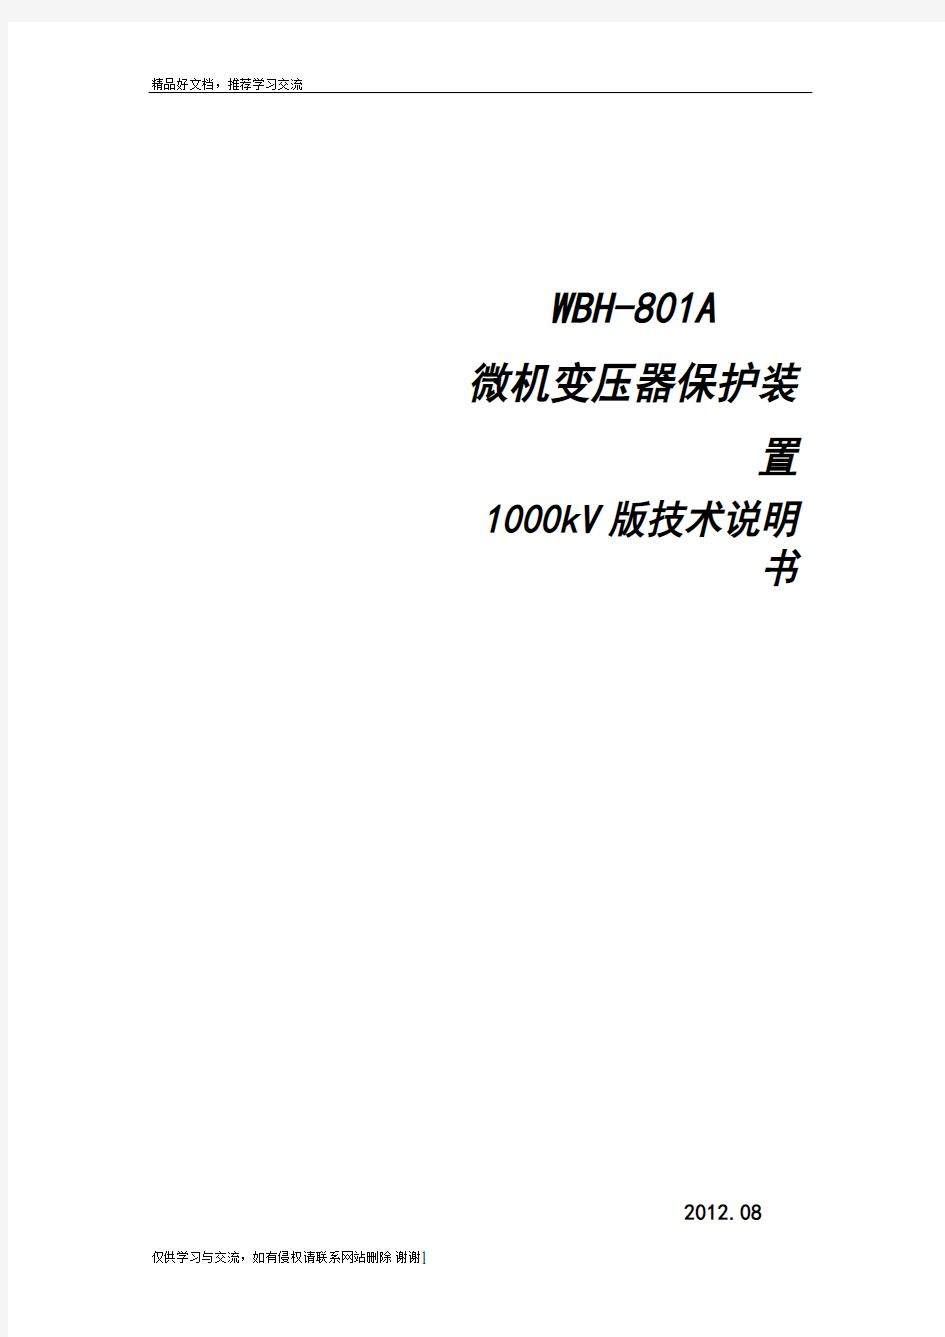 最新WBH-801A微机变压器保护装置-技术说明书(1000kV版本)